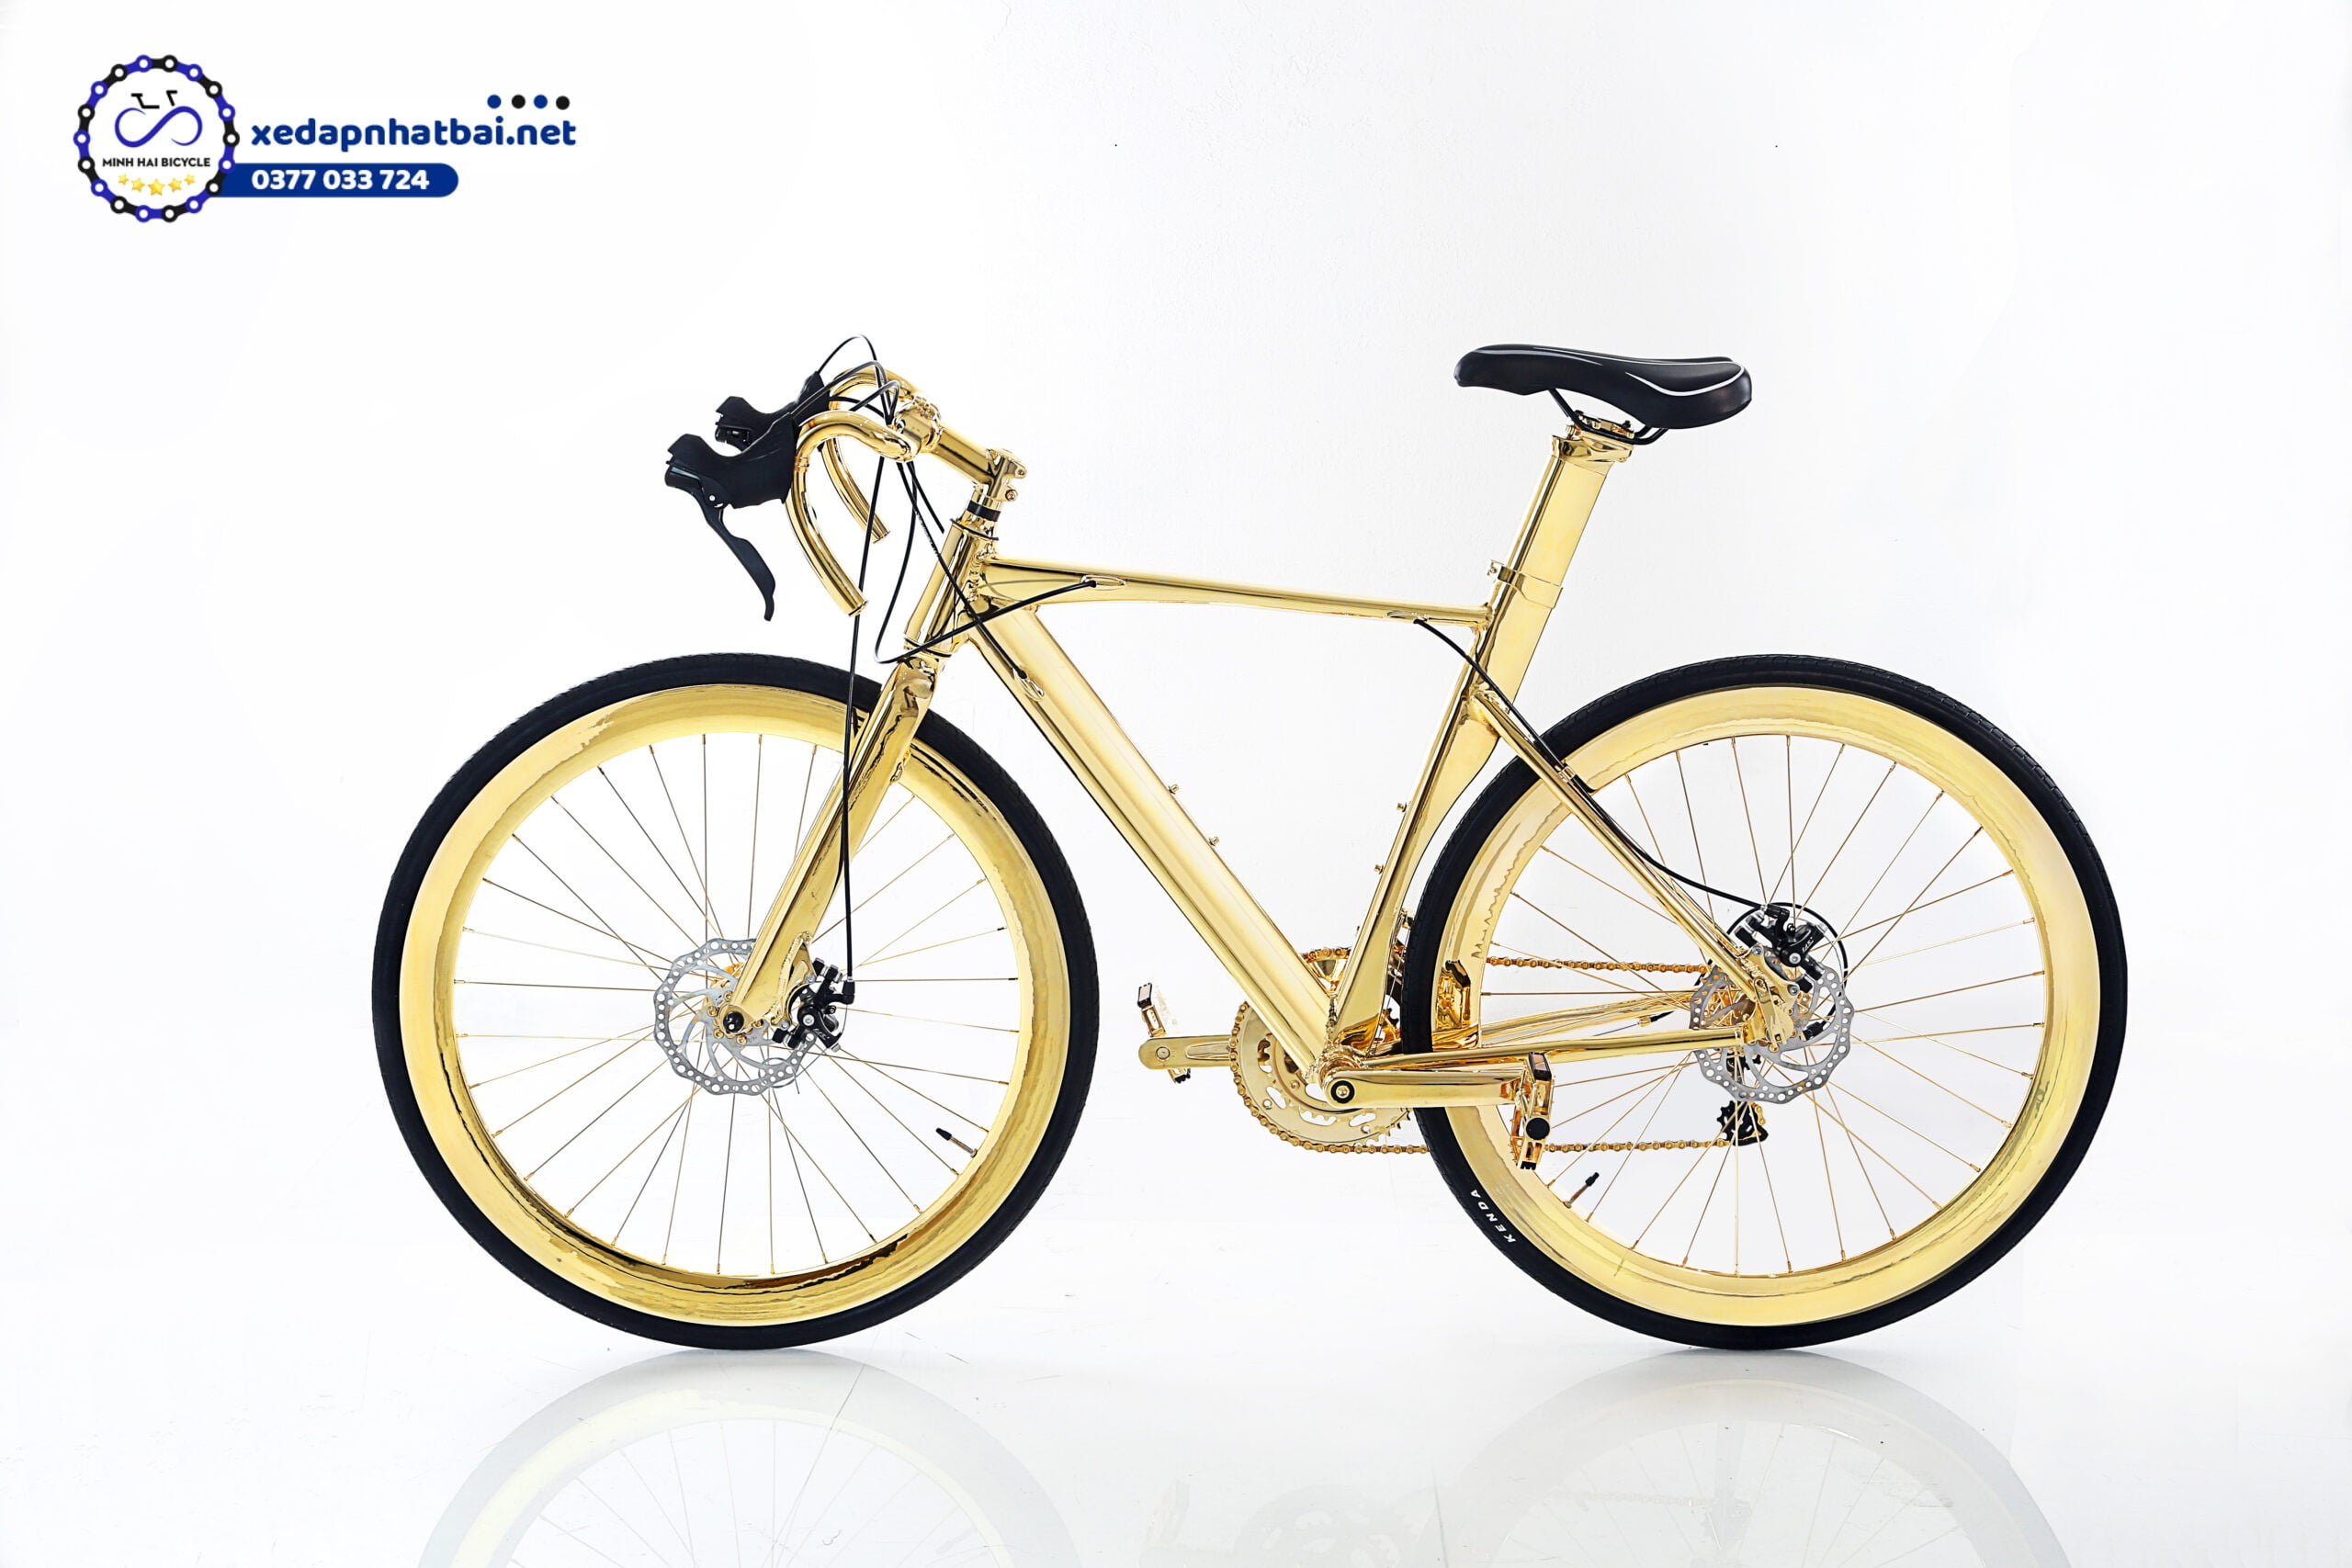 Đây lại là một trong những chiếc xe đạp với toàn thân đều được mạ vàng 24k, trông rất hào nhoáng